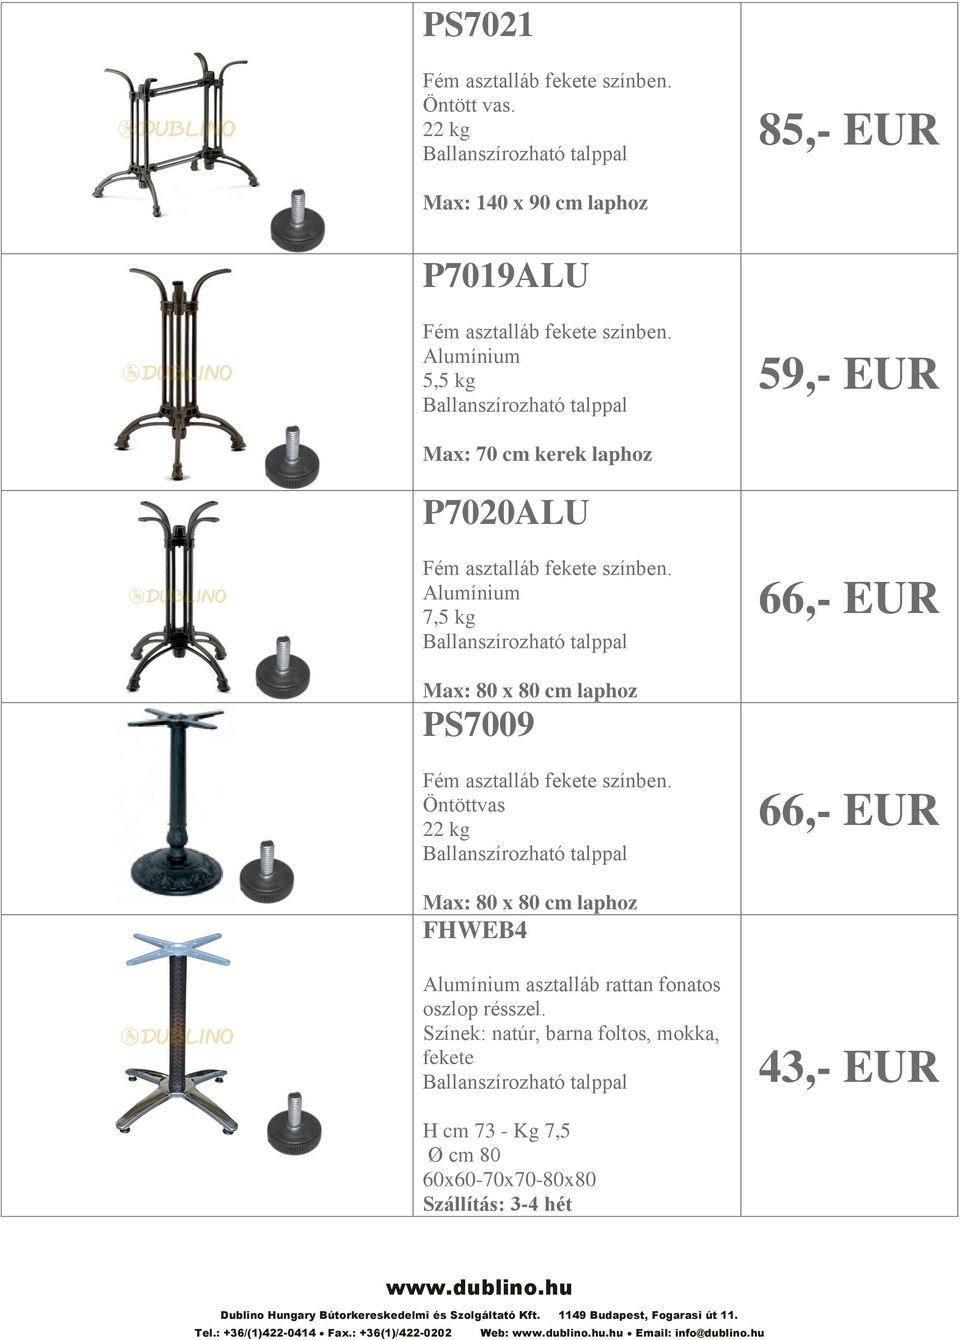 Alumínium 7,5 kg 66,- EUR PS7009 Öntöttvas 22 kg 66,- EUR FHWEB4 Alumínium asztalláb rattan fonatos oszlop